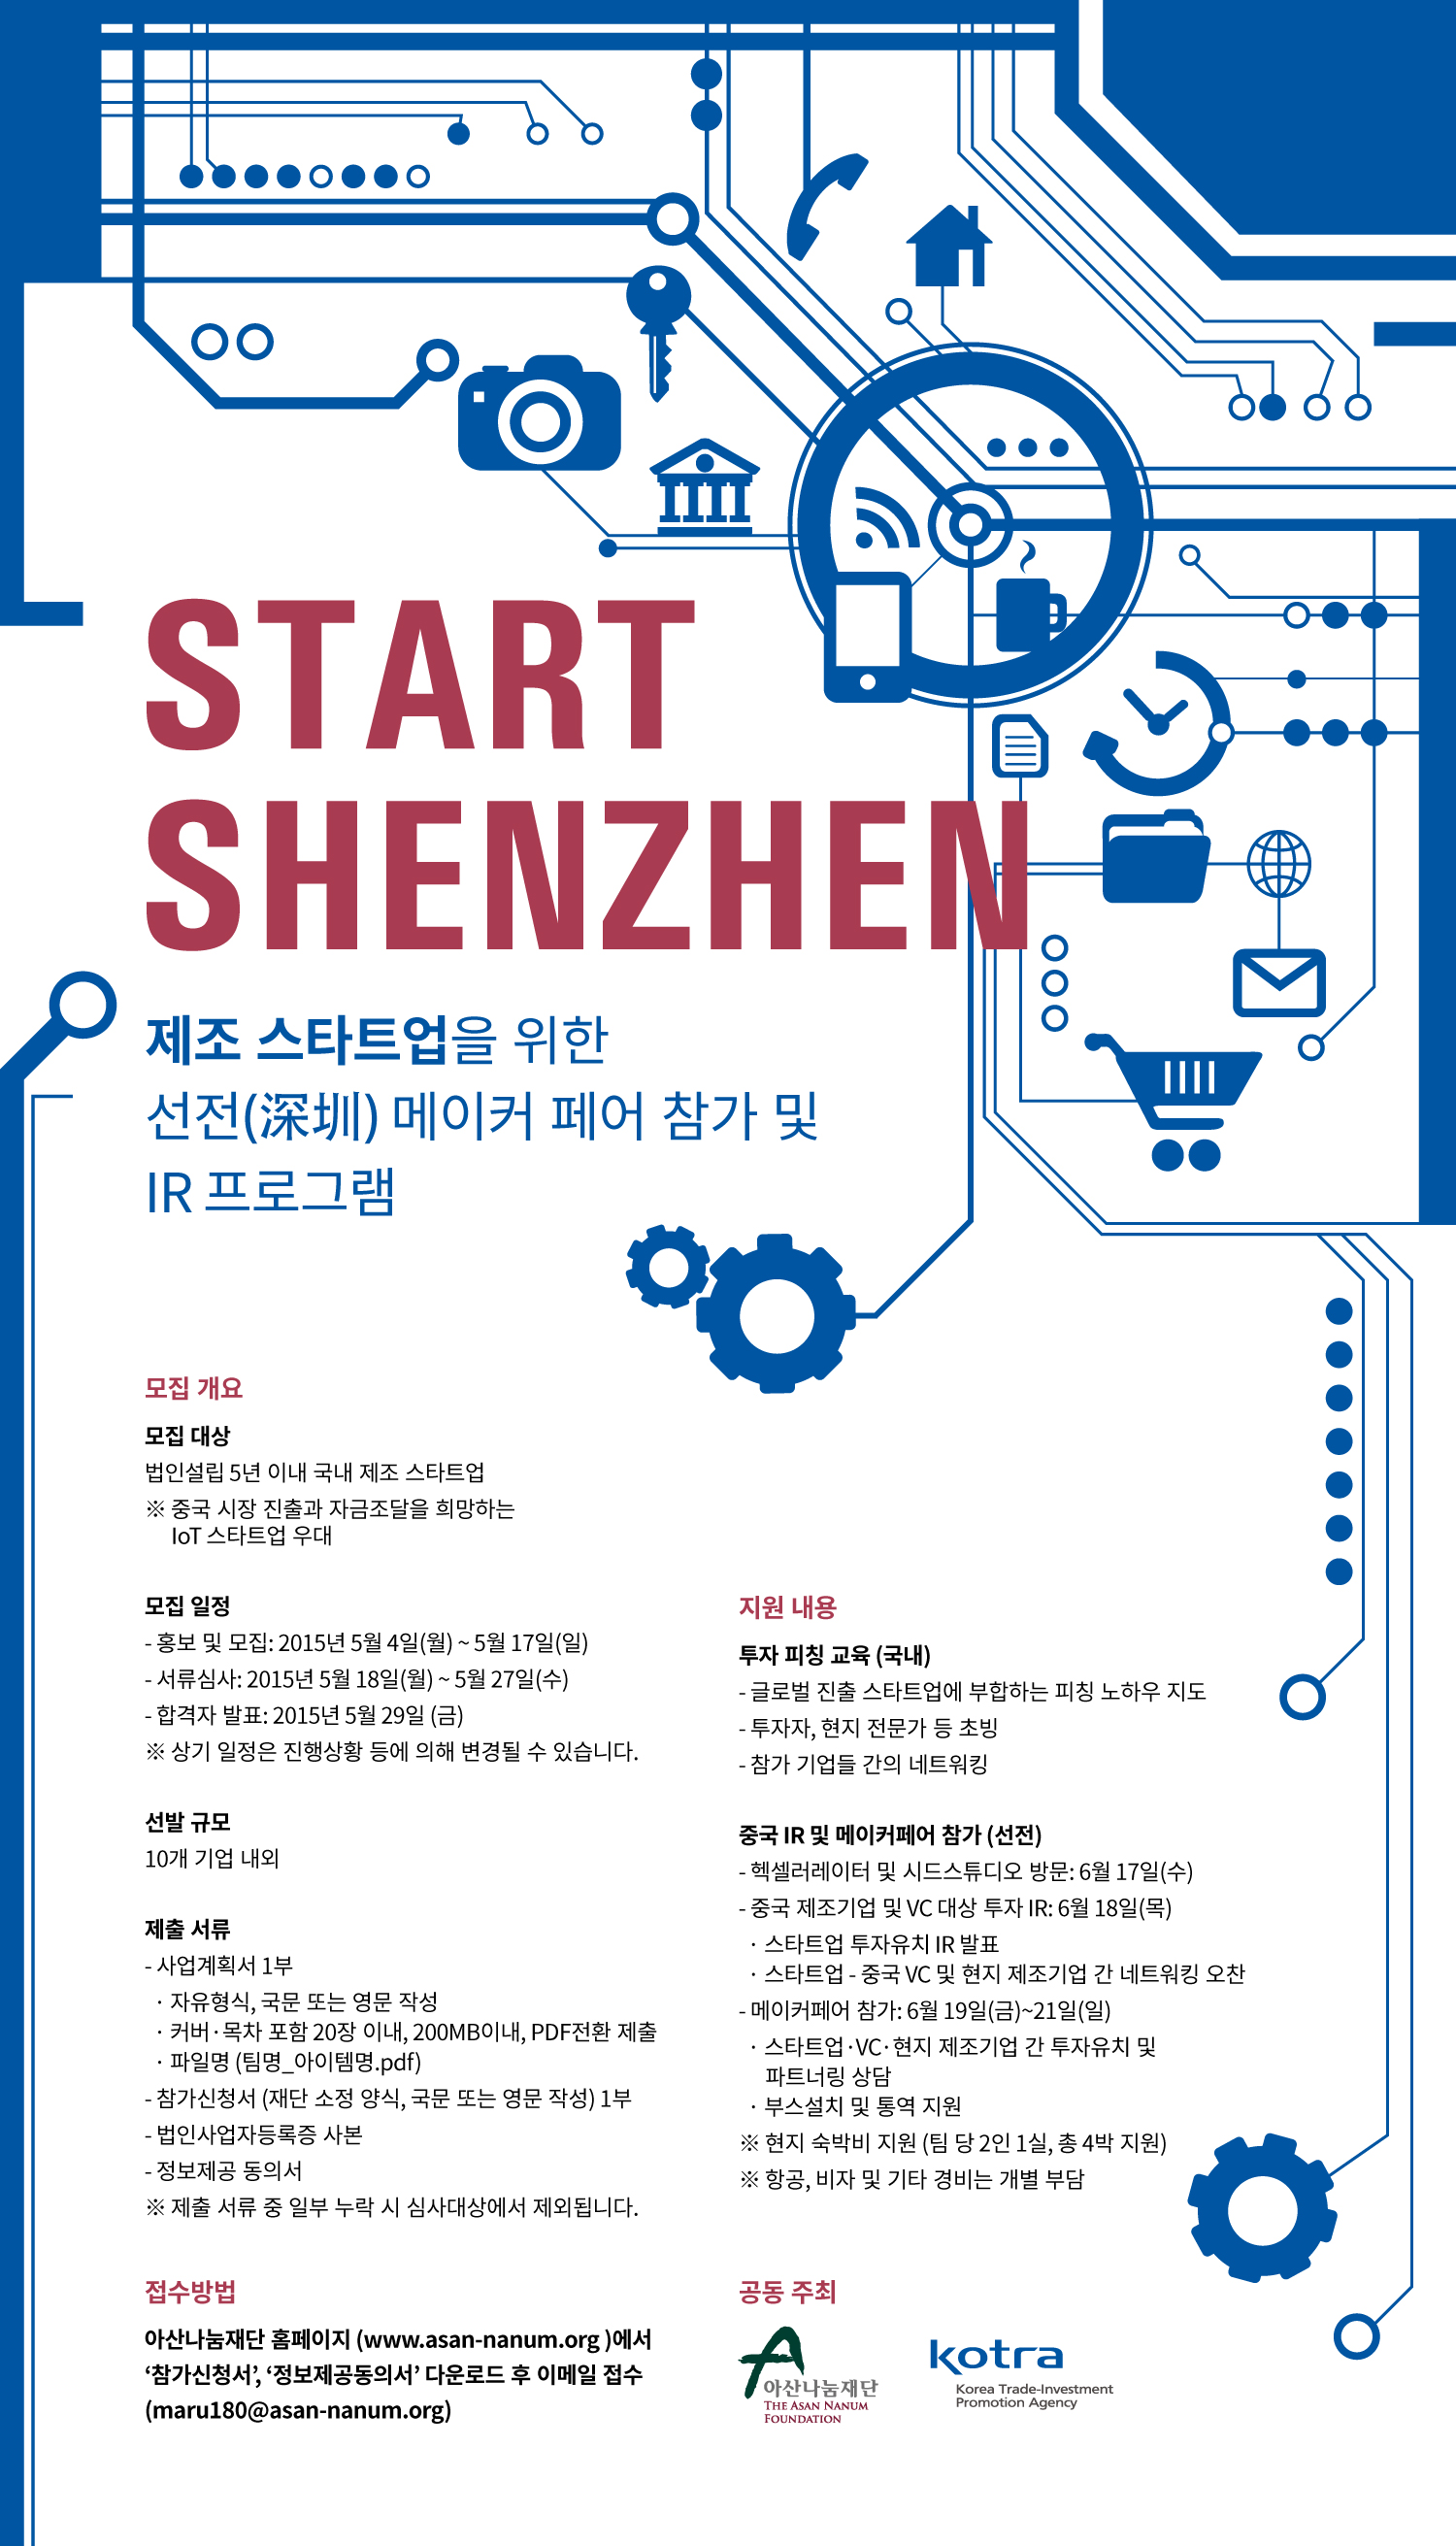 [보도자료 첨부파일] Start-Shenzhen-모집공고 포스터